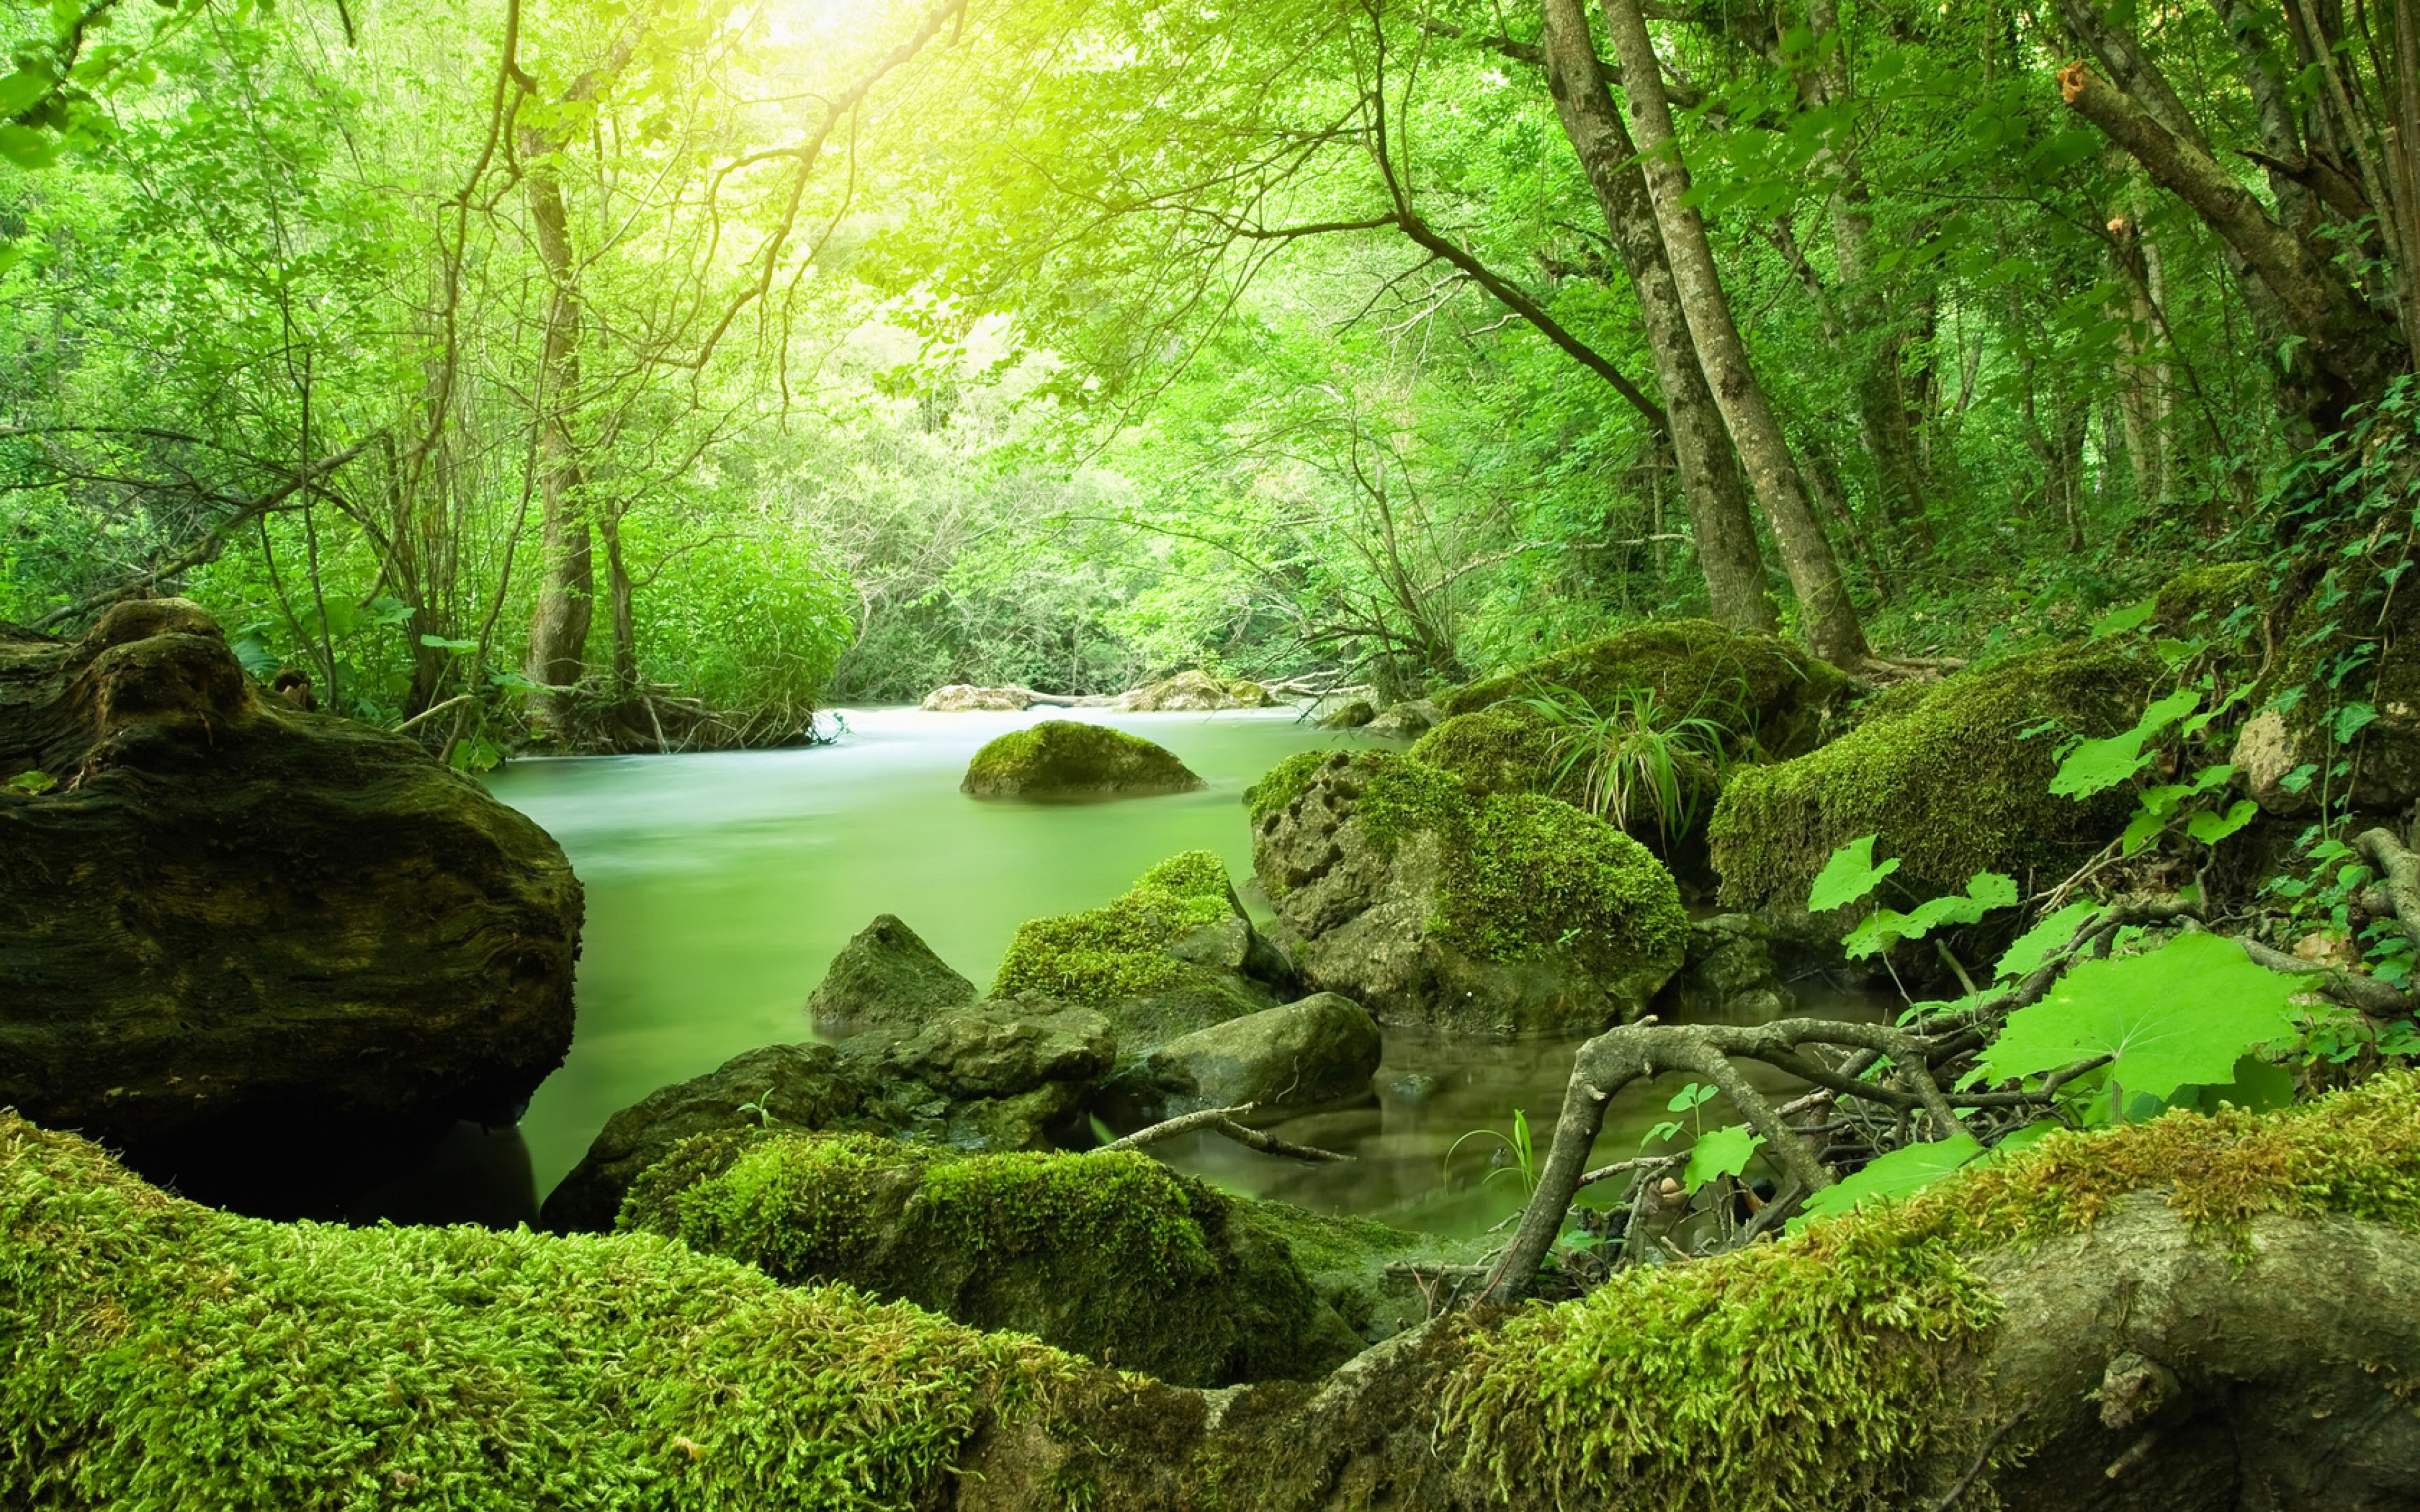 ジャングル壁紙hd,自然の風景,自然,水域,緑,森林